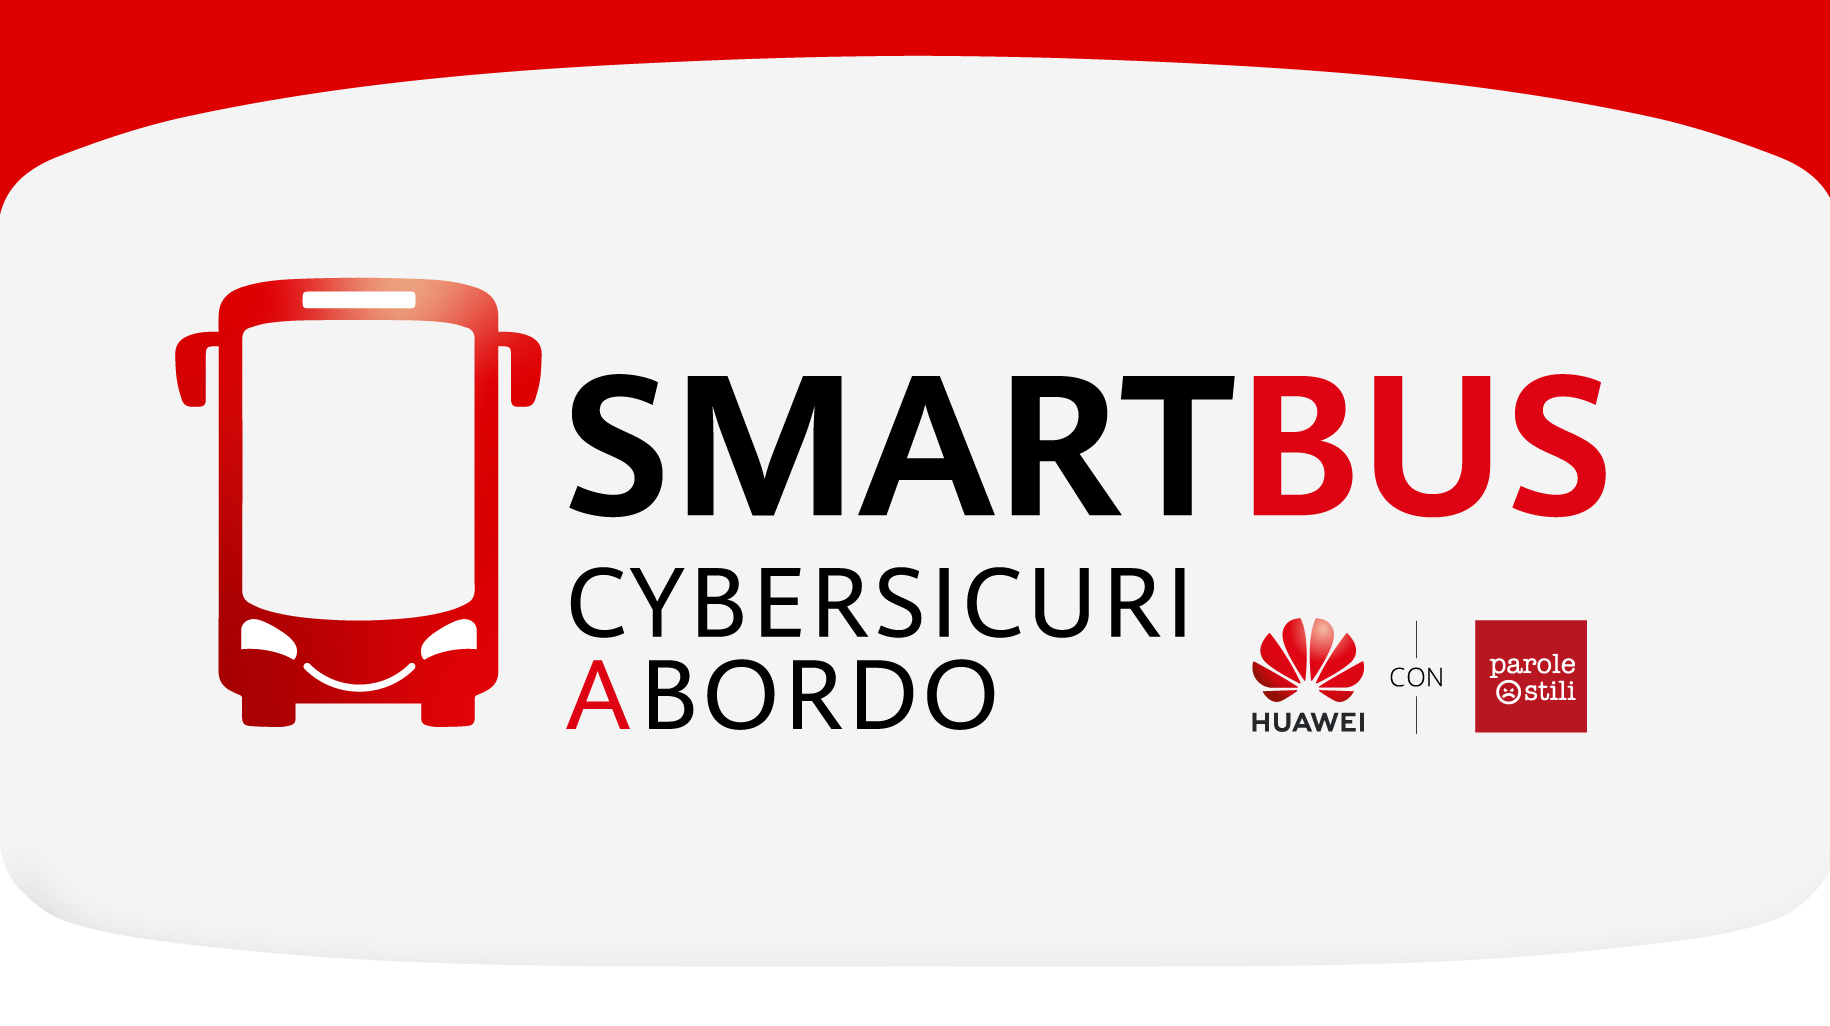 Arriva a Pisa SmartBus, l’iniziativa di Huawei e Parole O_Stili per<br>promuovere maggiore consapevolezza sulla sicurezza digitale